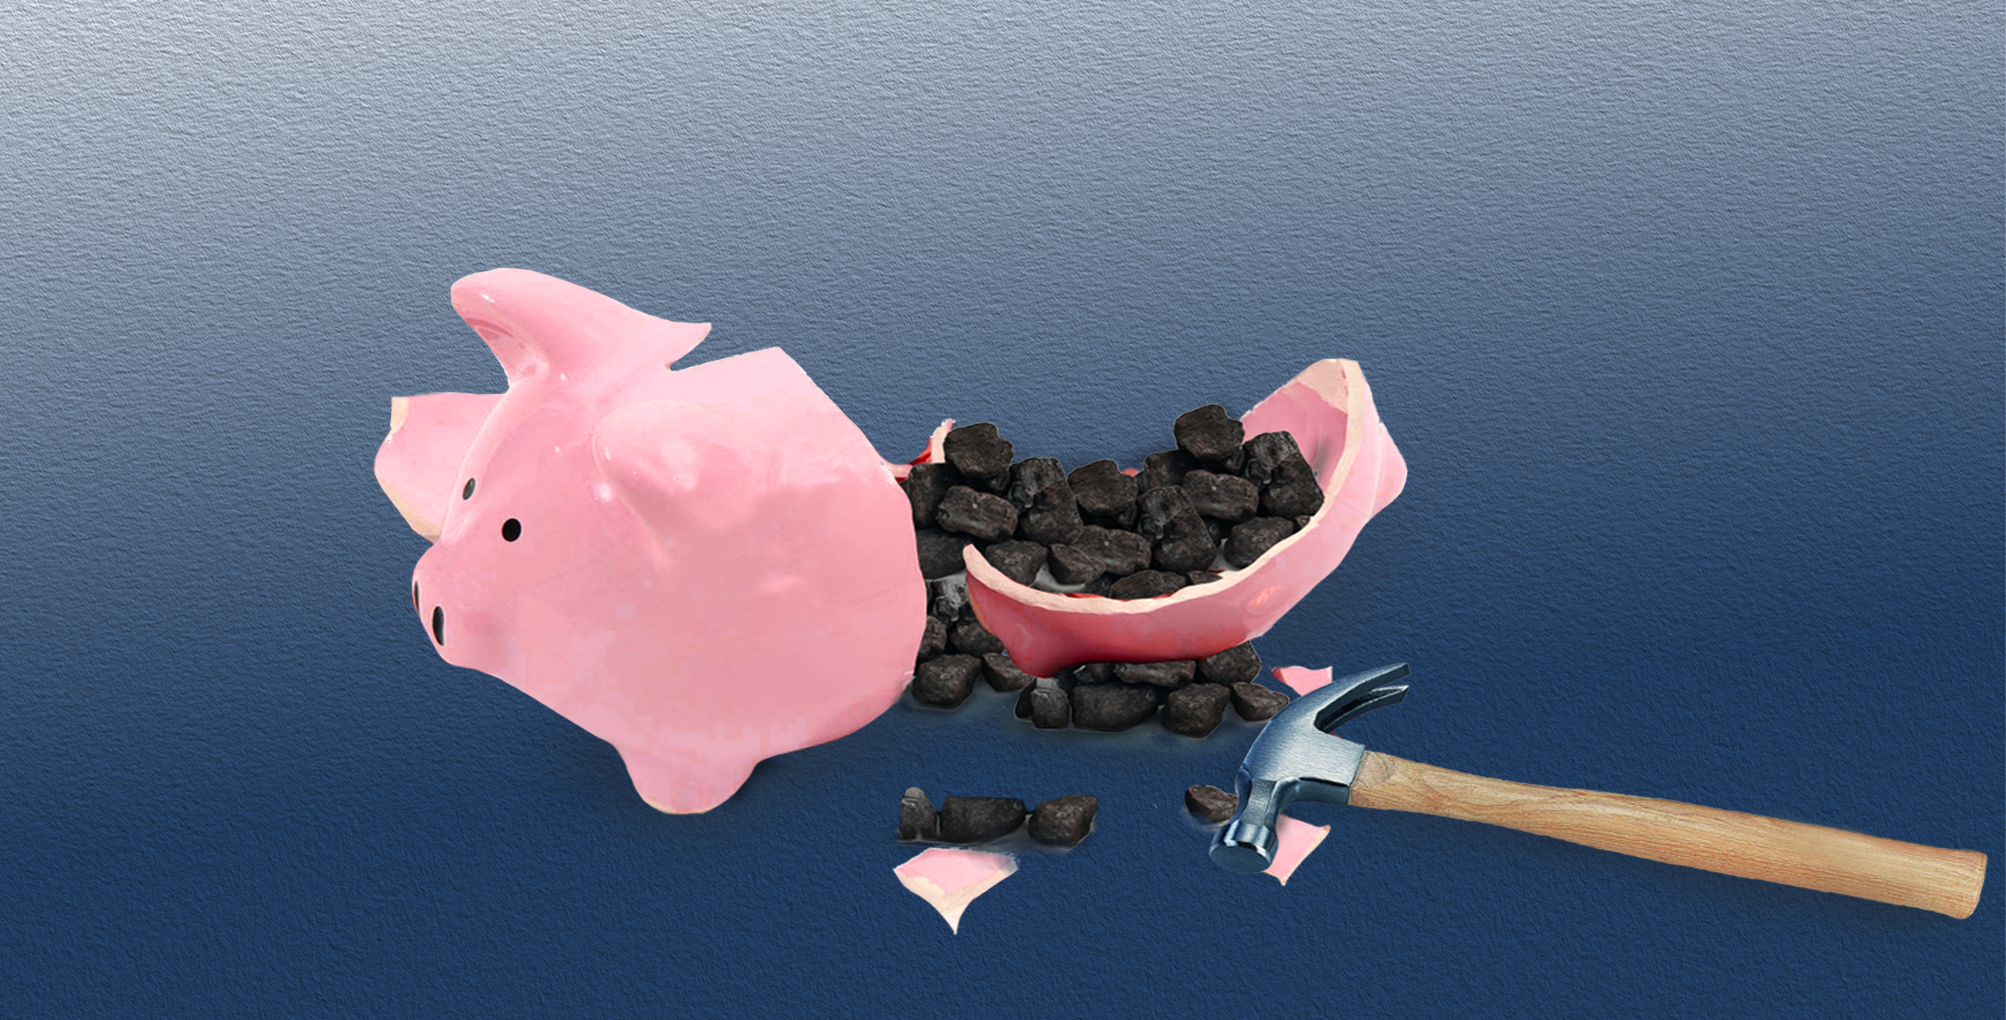 broken piggy bank